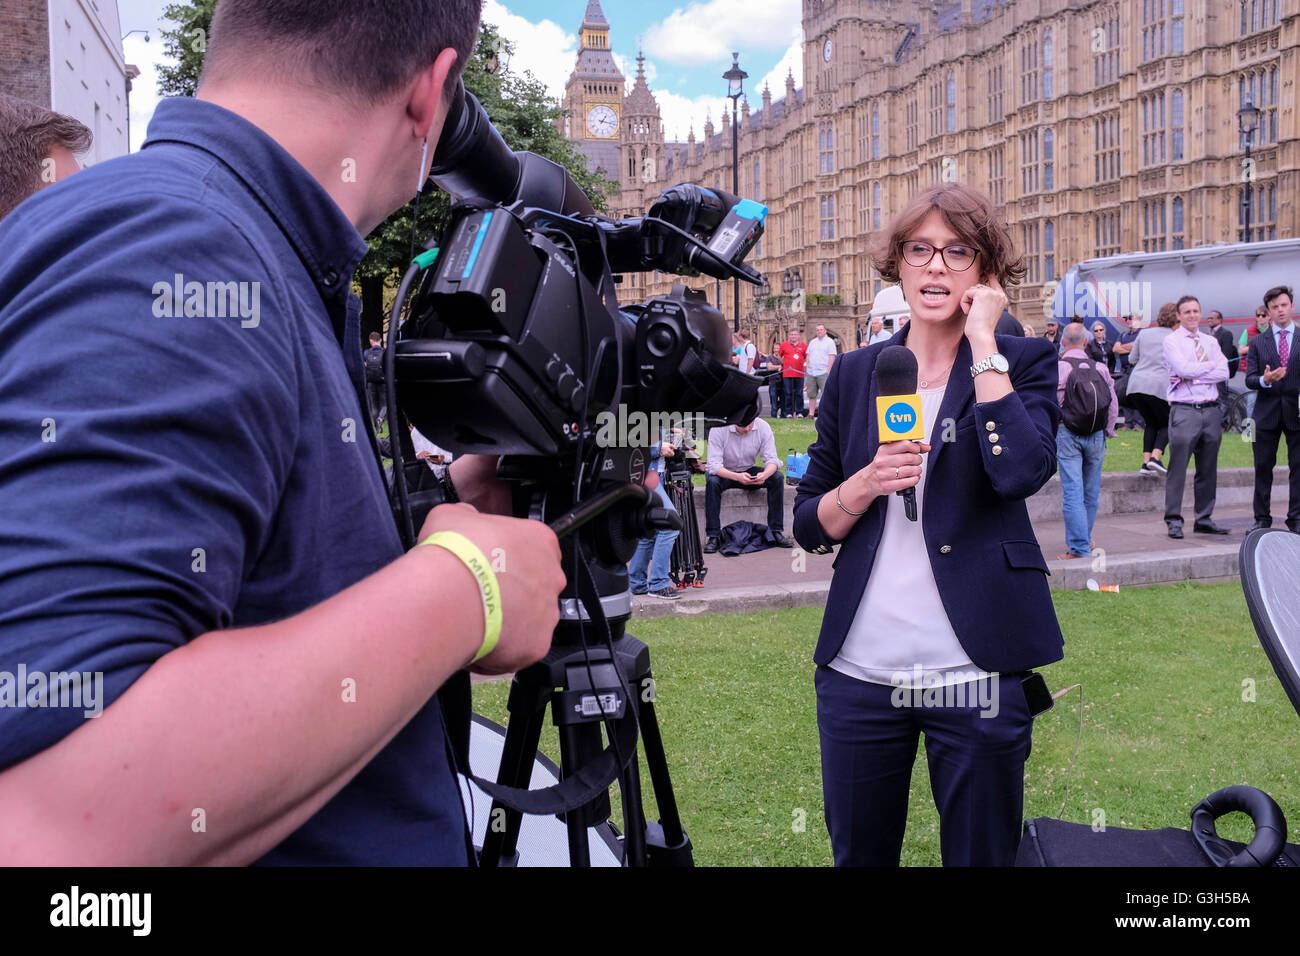 Londra, Regno Unito. 24 giugno 2016 il giornalista televisivo TVN presenta il pezzo in diretta da telecamera di fronte al Parlamento dopo il risultato del referendum britannico sull'adesione all'UE. Foto Stock